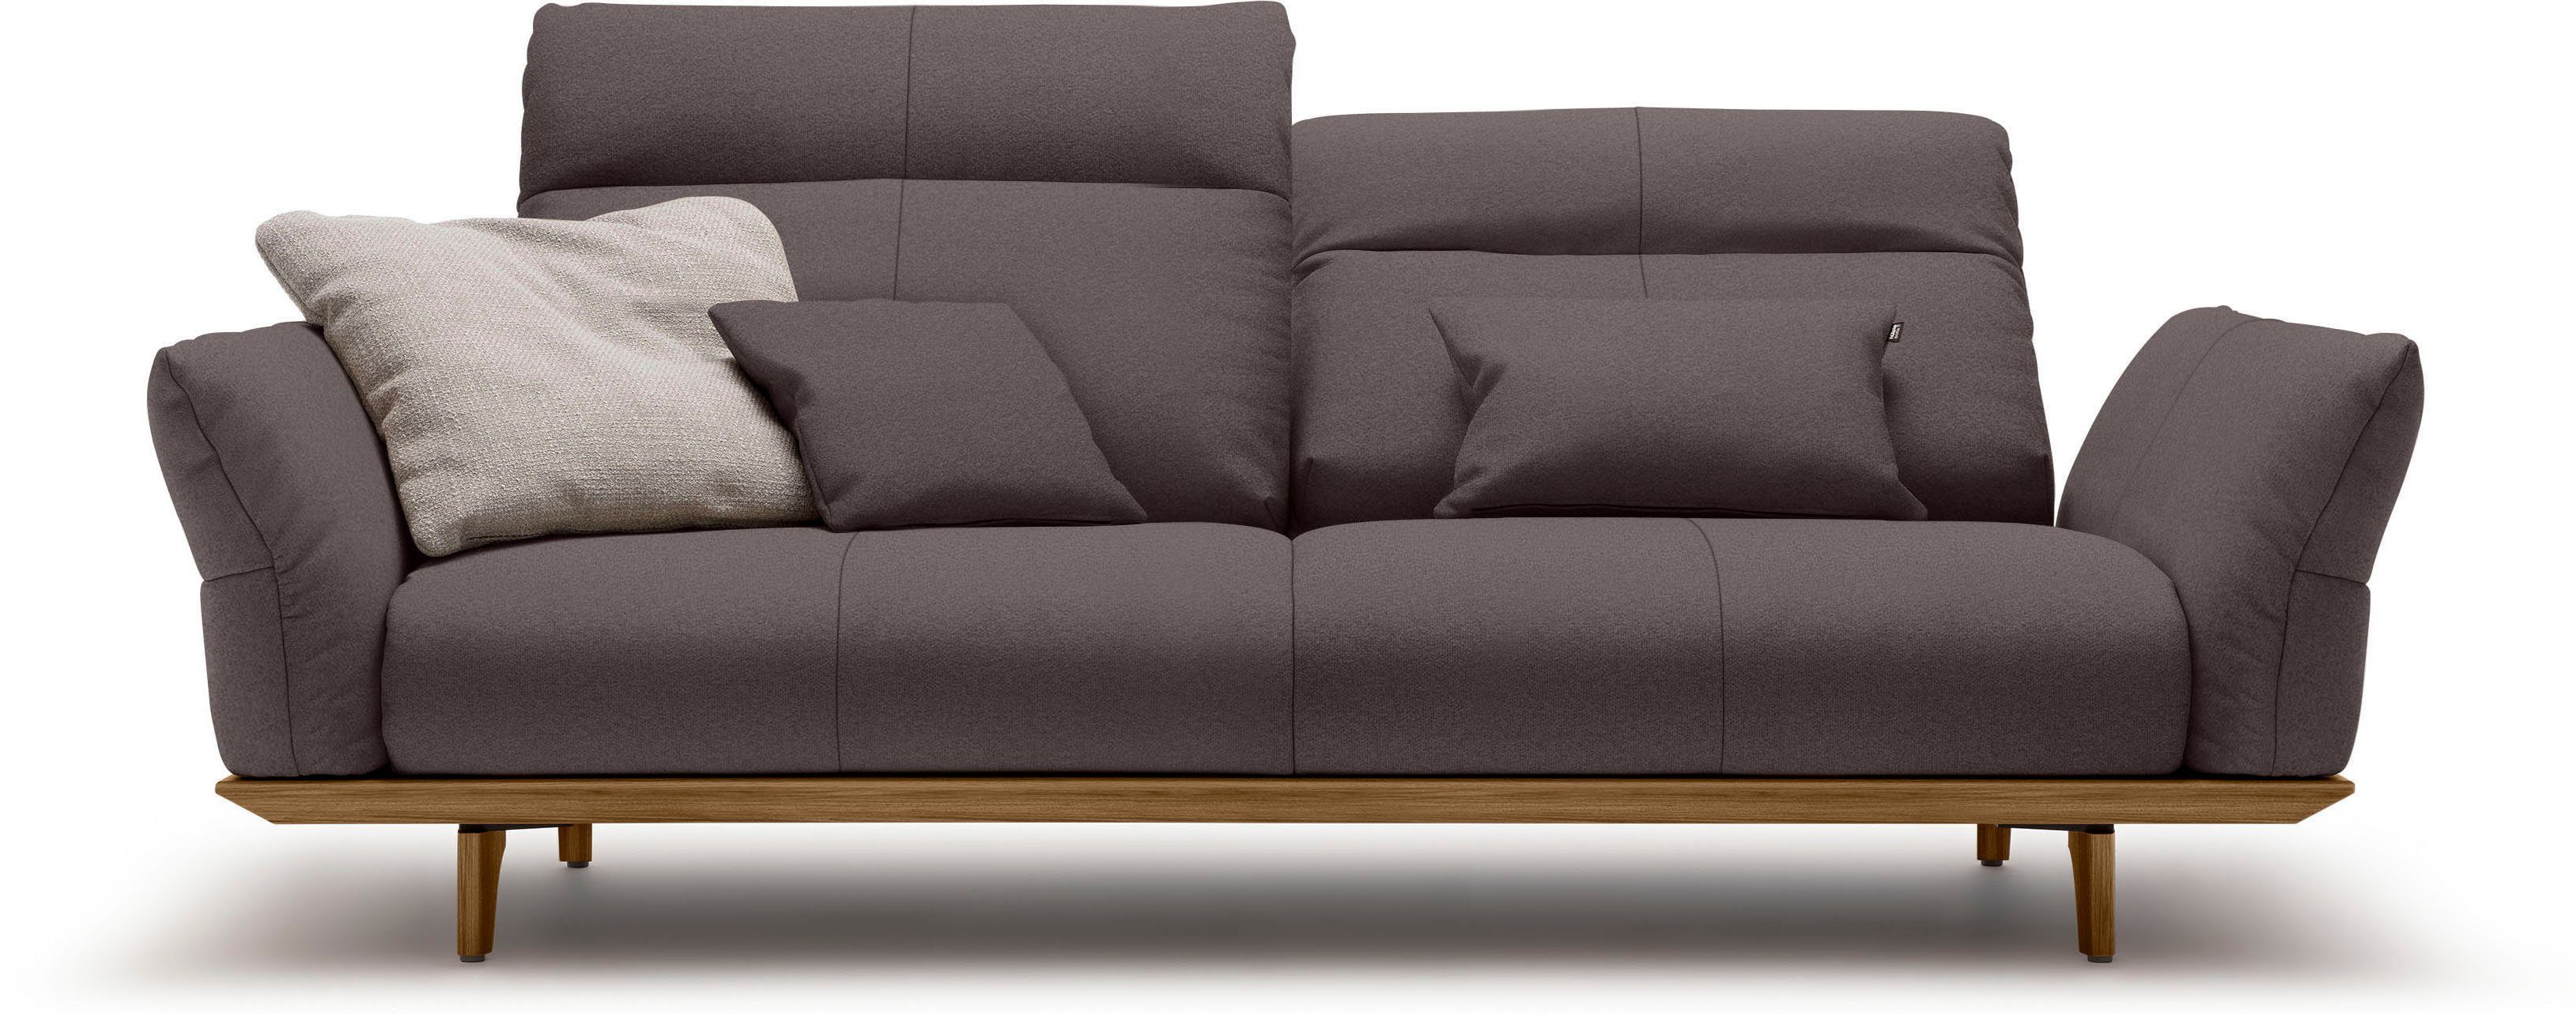 Nussbaum, Sockel in hs.460, Nussbaum, Breite 208 Füße cm hülsta sofa 3-Sitzer